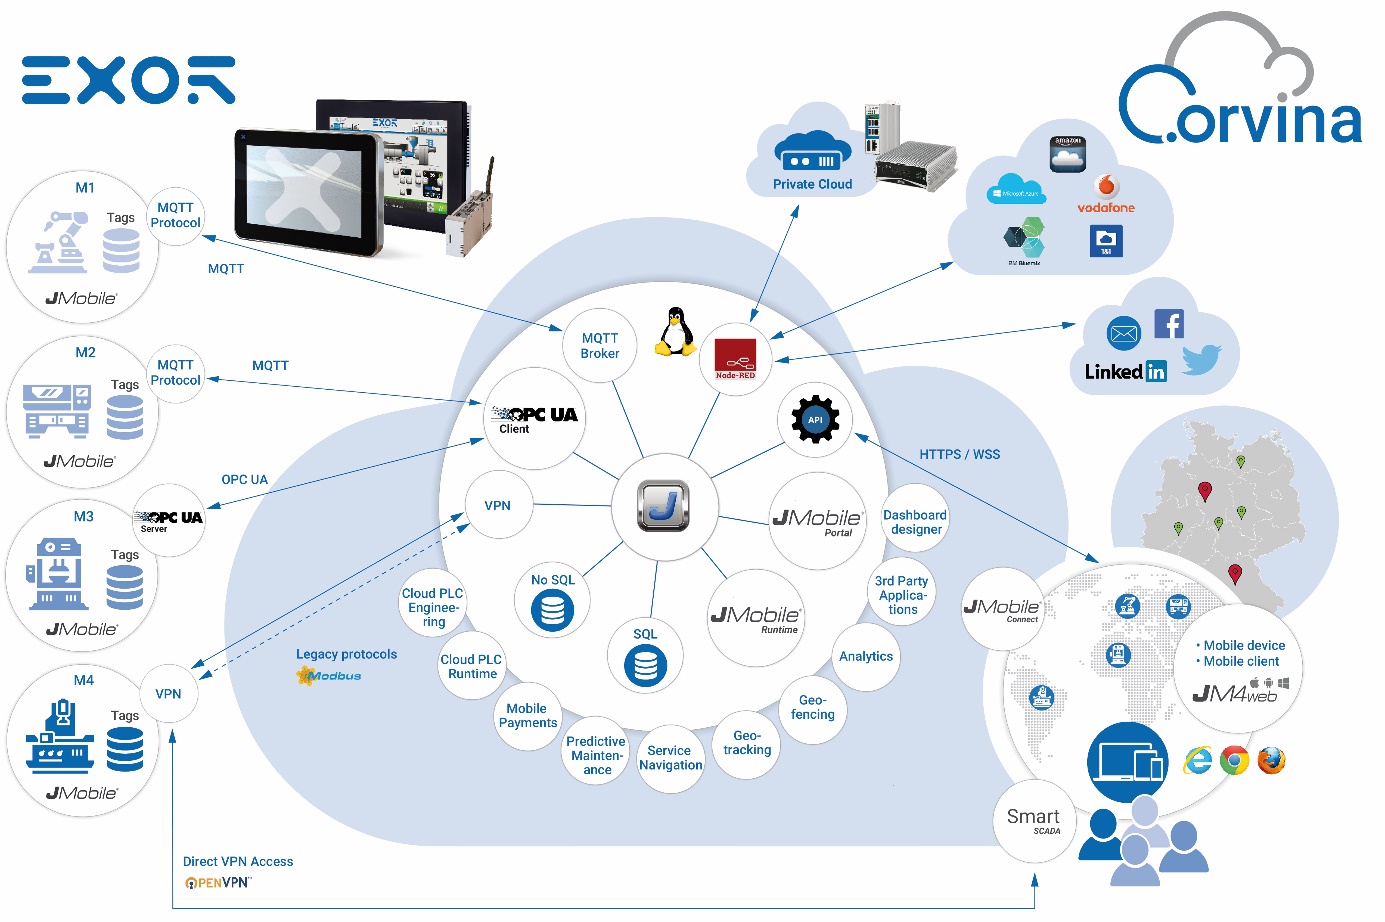 Grafik veranschaulicht die Anbindung von Maschinen und Anlagen in die Cloud der Corvina-Plattform.